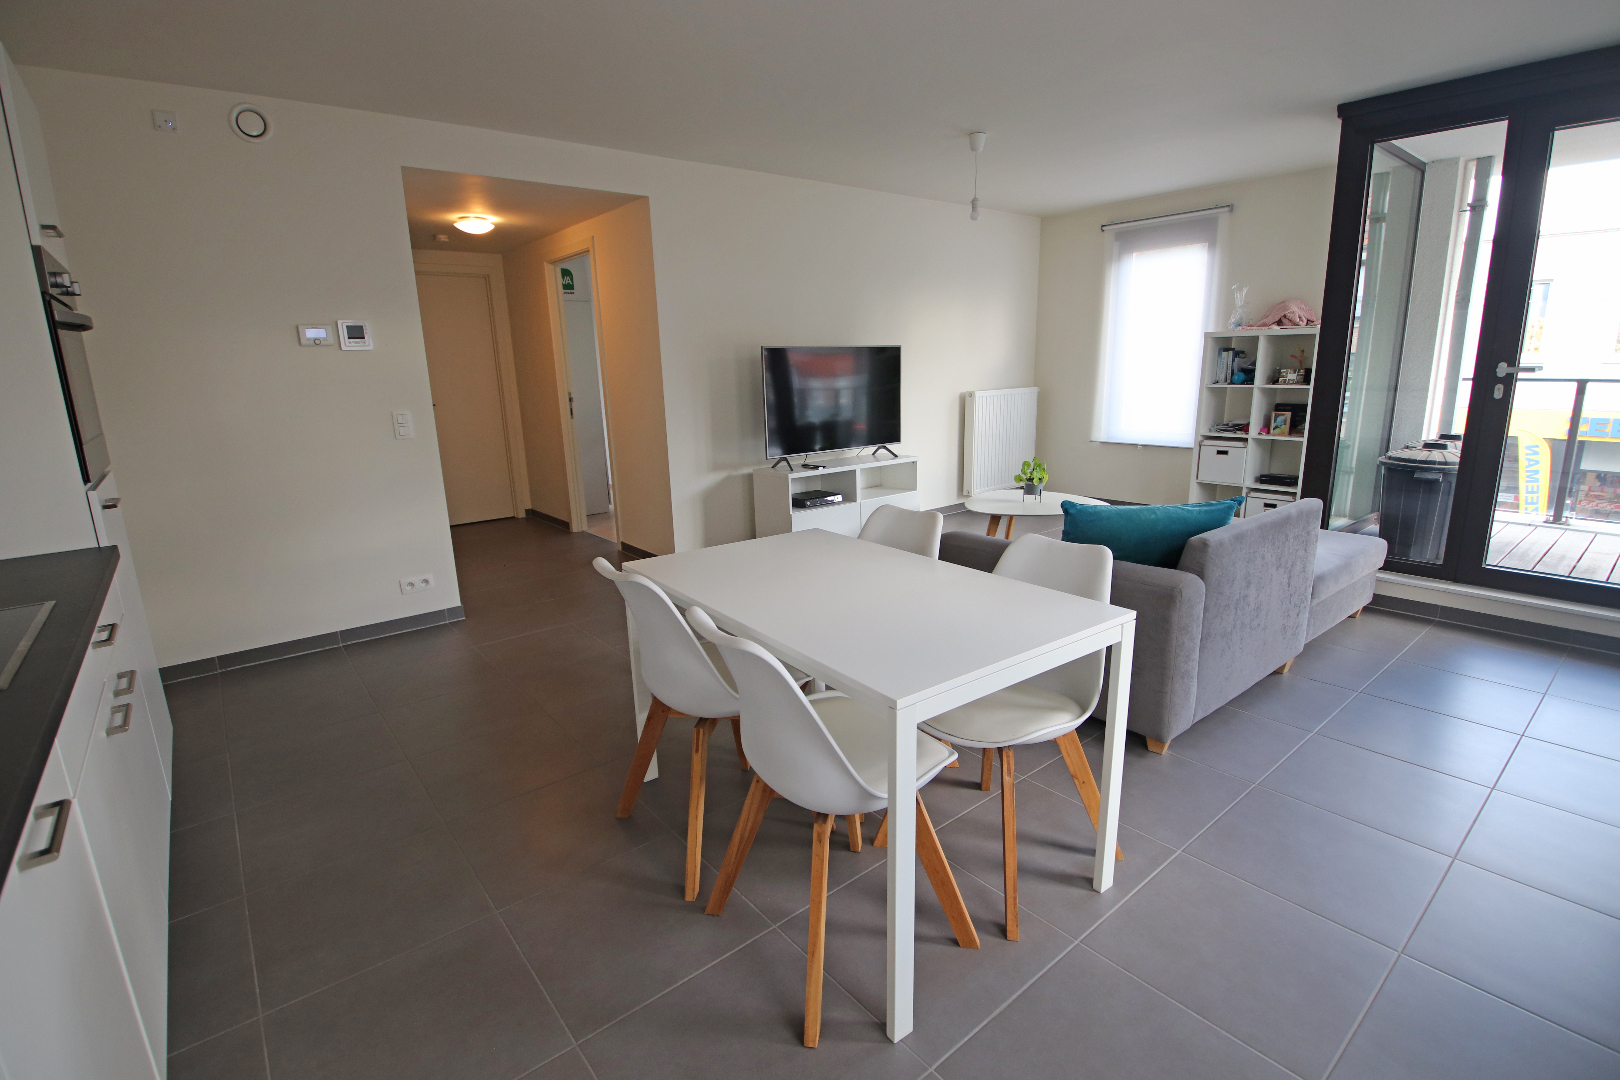 Instapklaar appartement gelegen in het centrum van Leopoldsburg (bj 2015) 